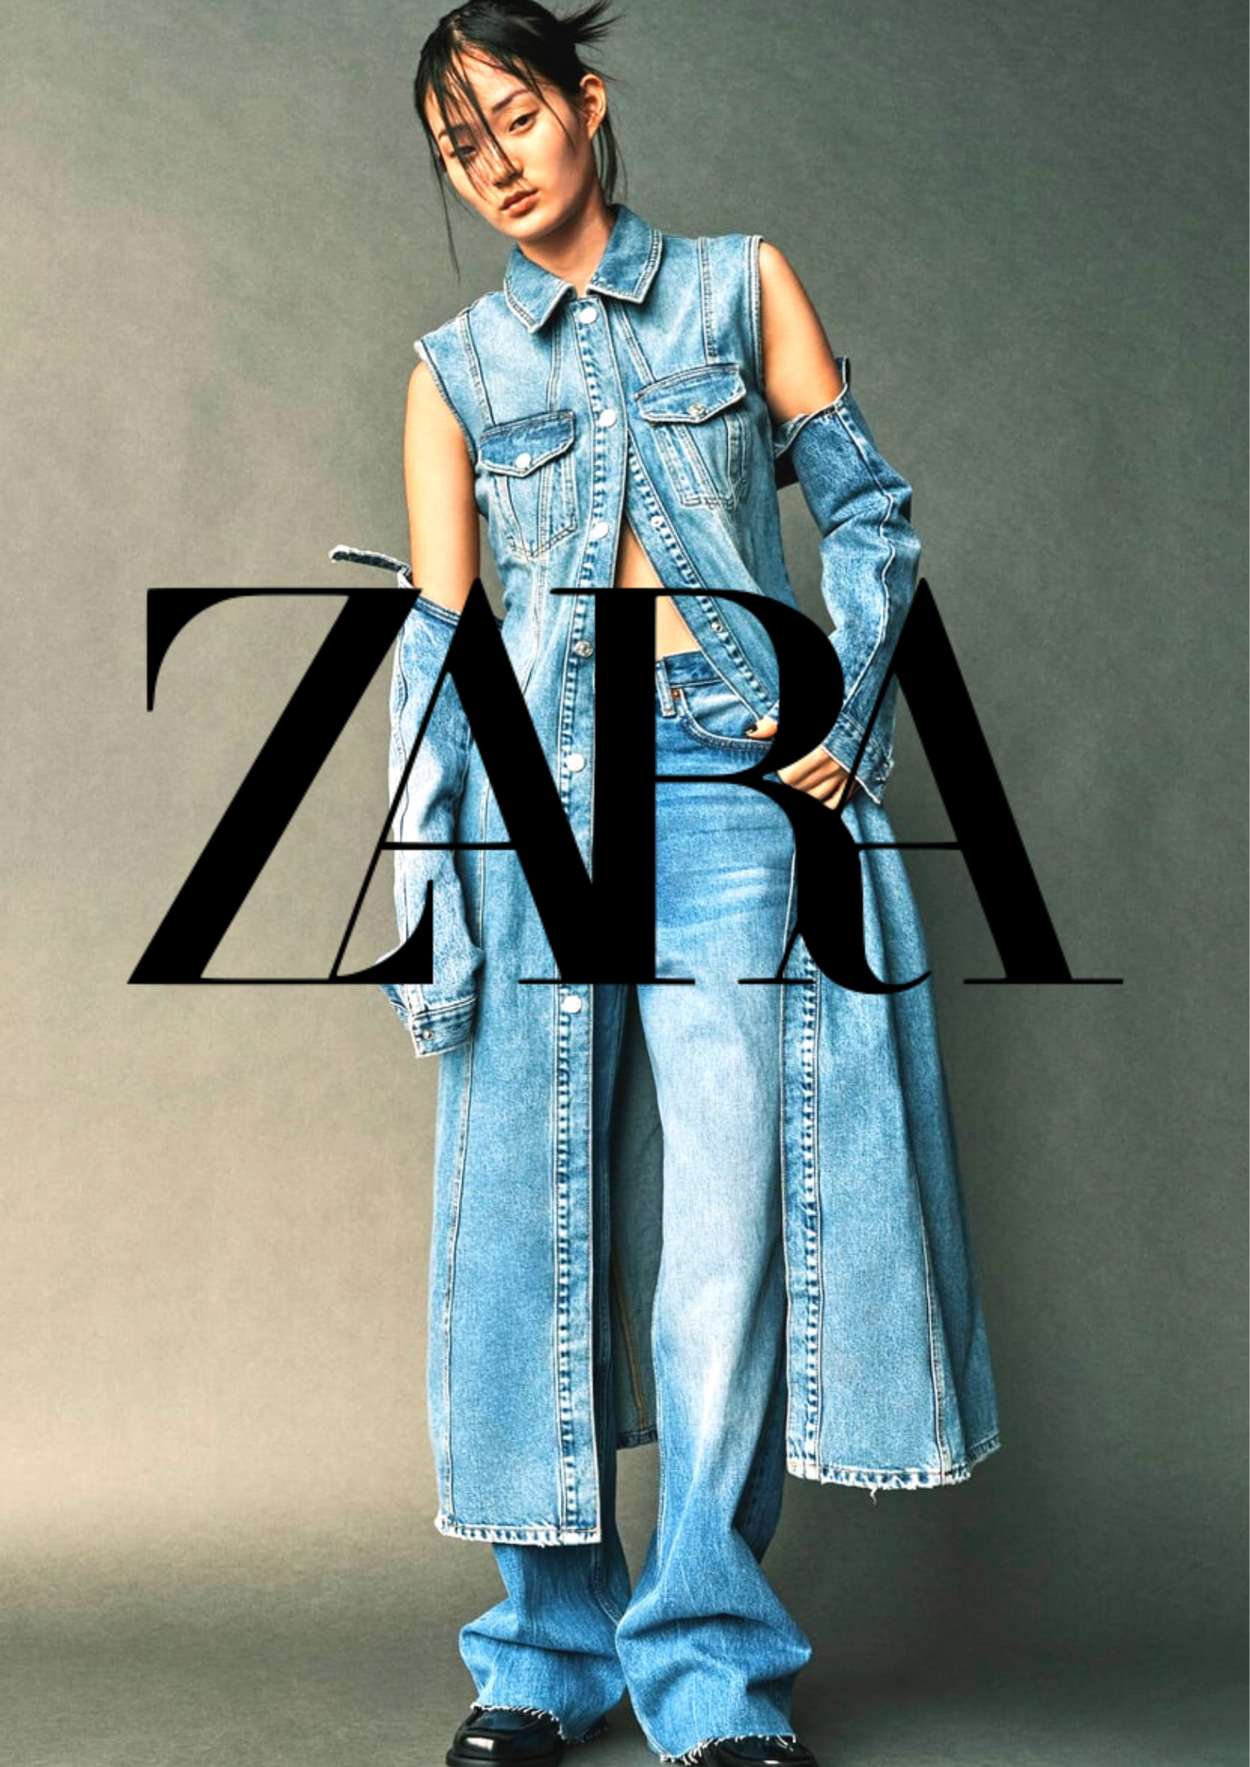 Zara Folders promotionels